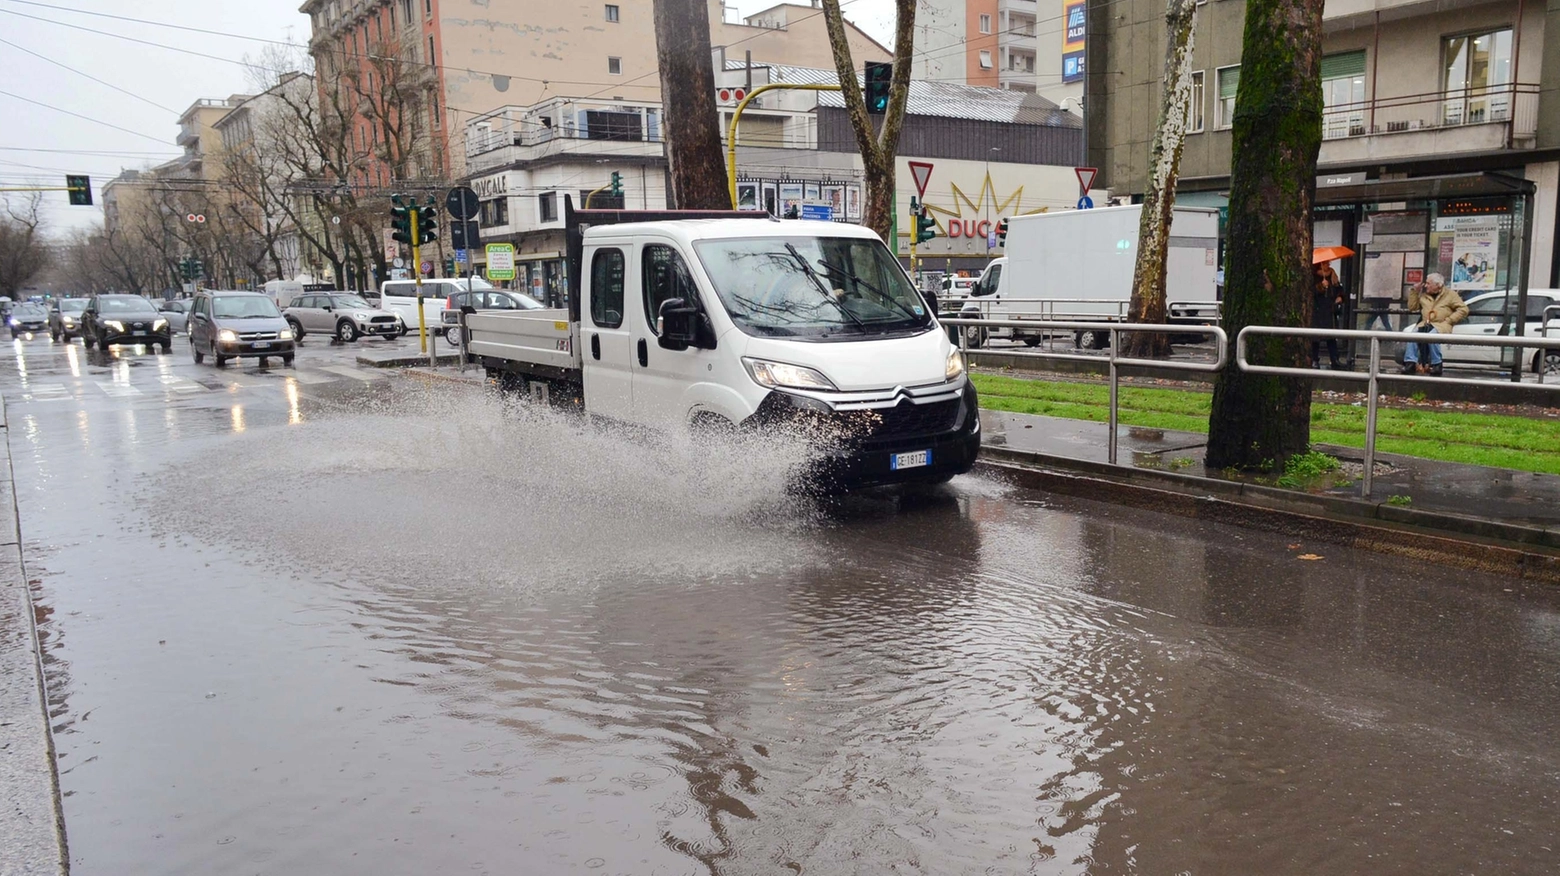 Allerta meteo in otto regioni (ma non in Lombardia). L’assessore Gramelli: “Attenzione, le piogge hanno causato un innalzamento dei livelli di fiumi e torrenti”